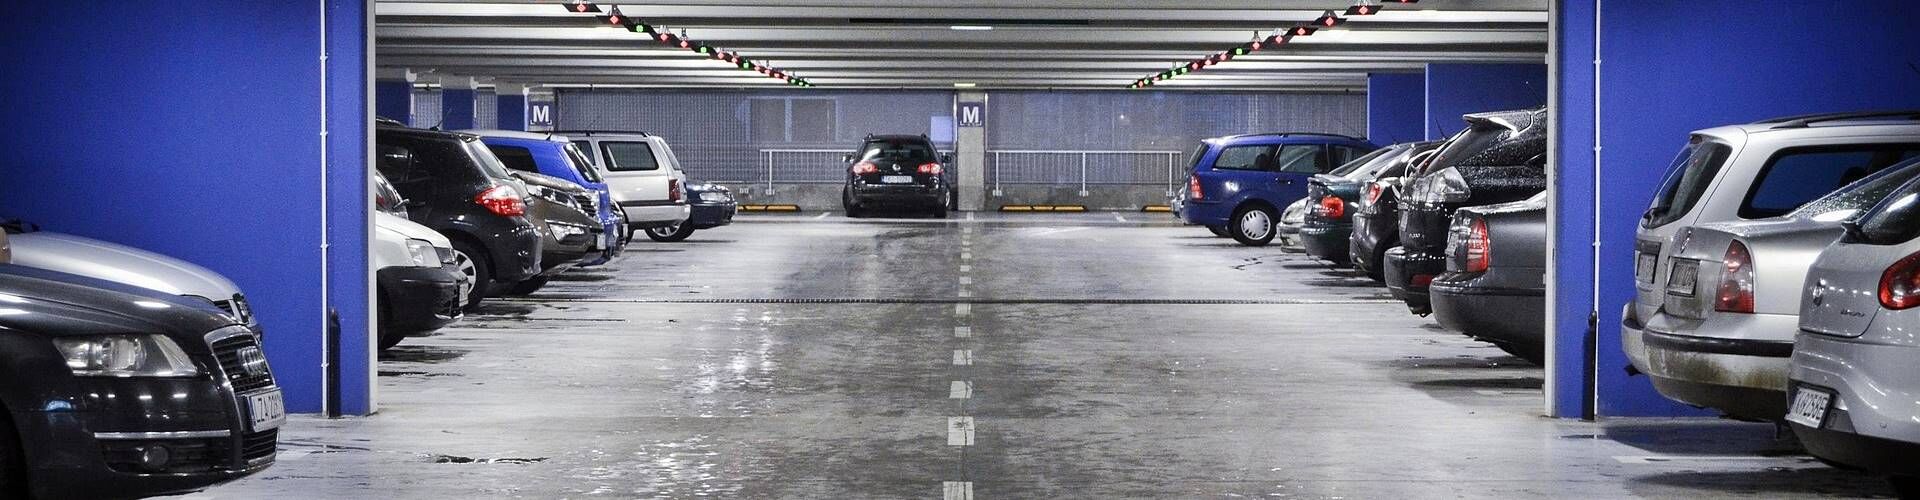 ¿Dónde aparcar cerca del aeropuerto de Bilbao?